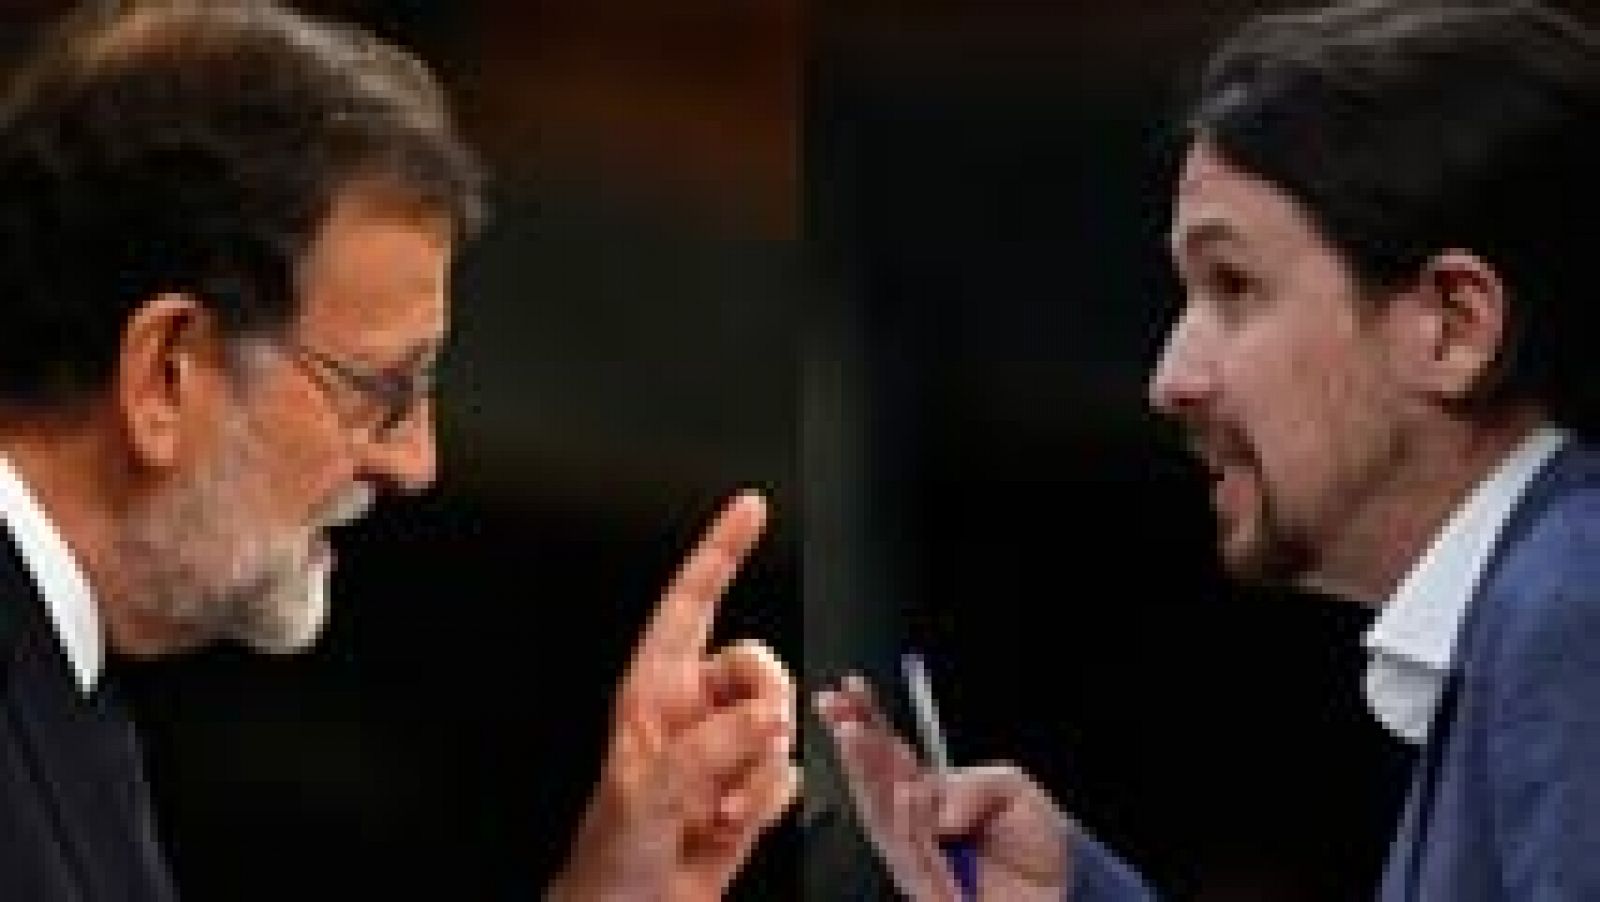 Los cara a cara entre Rajoy e Iglesias han marcado la primera jornada del debate de la moción de censura